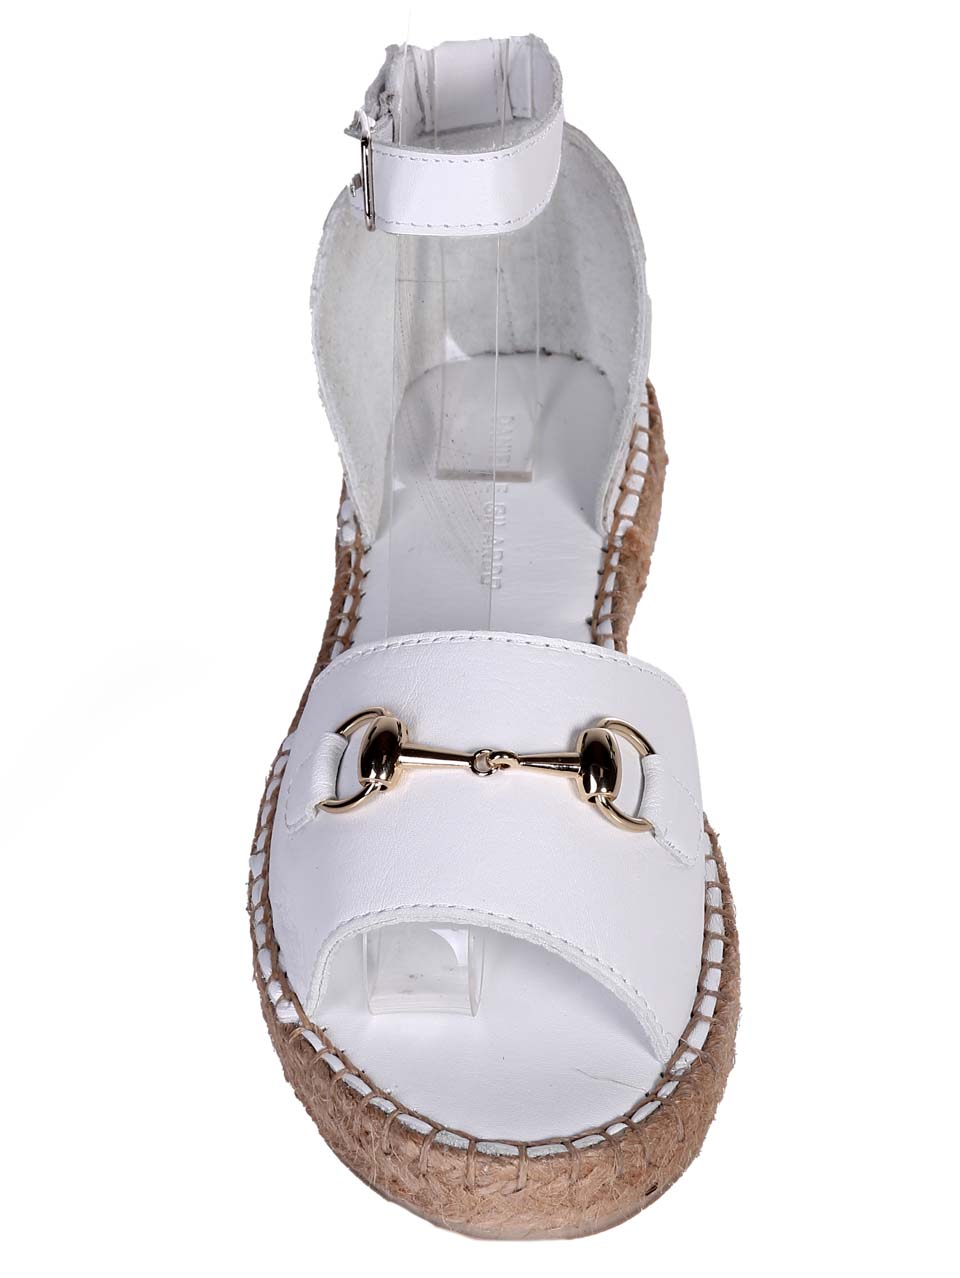 Ежедневни дамски сандали от естествена кожа в бяло 4AT-24351 white